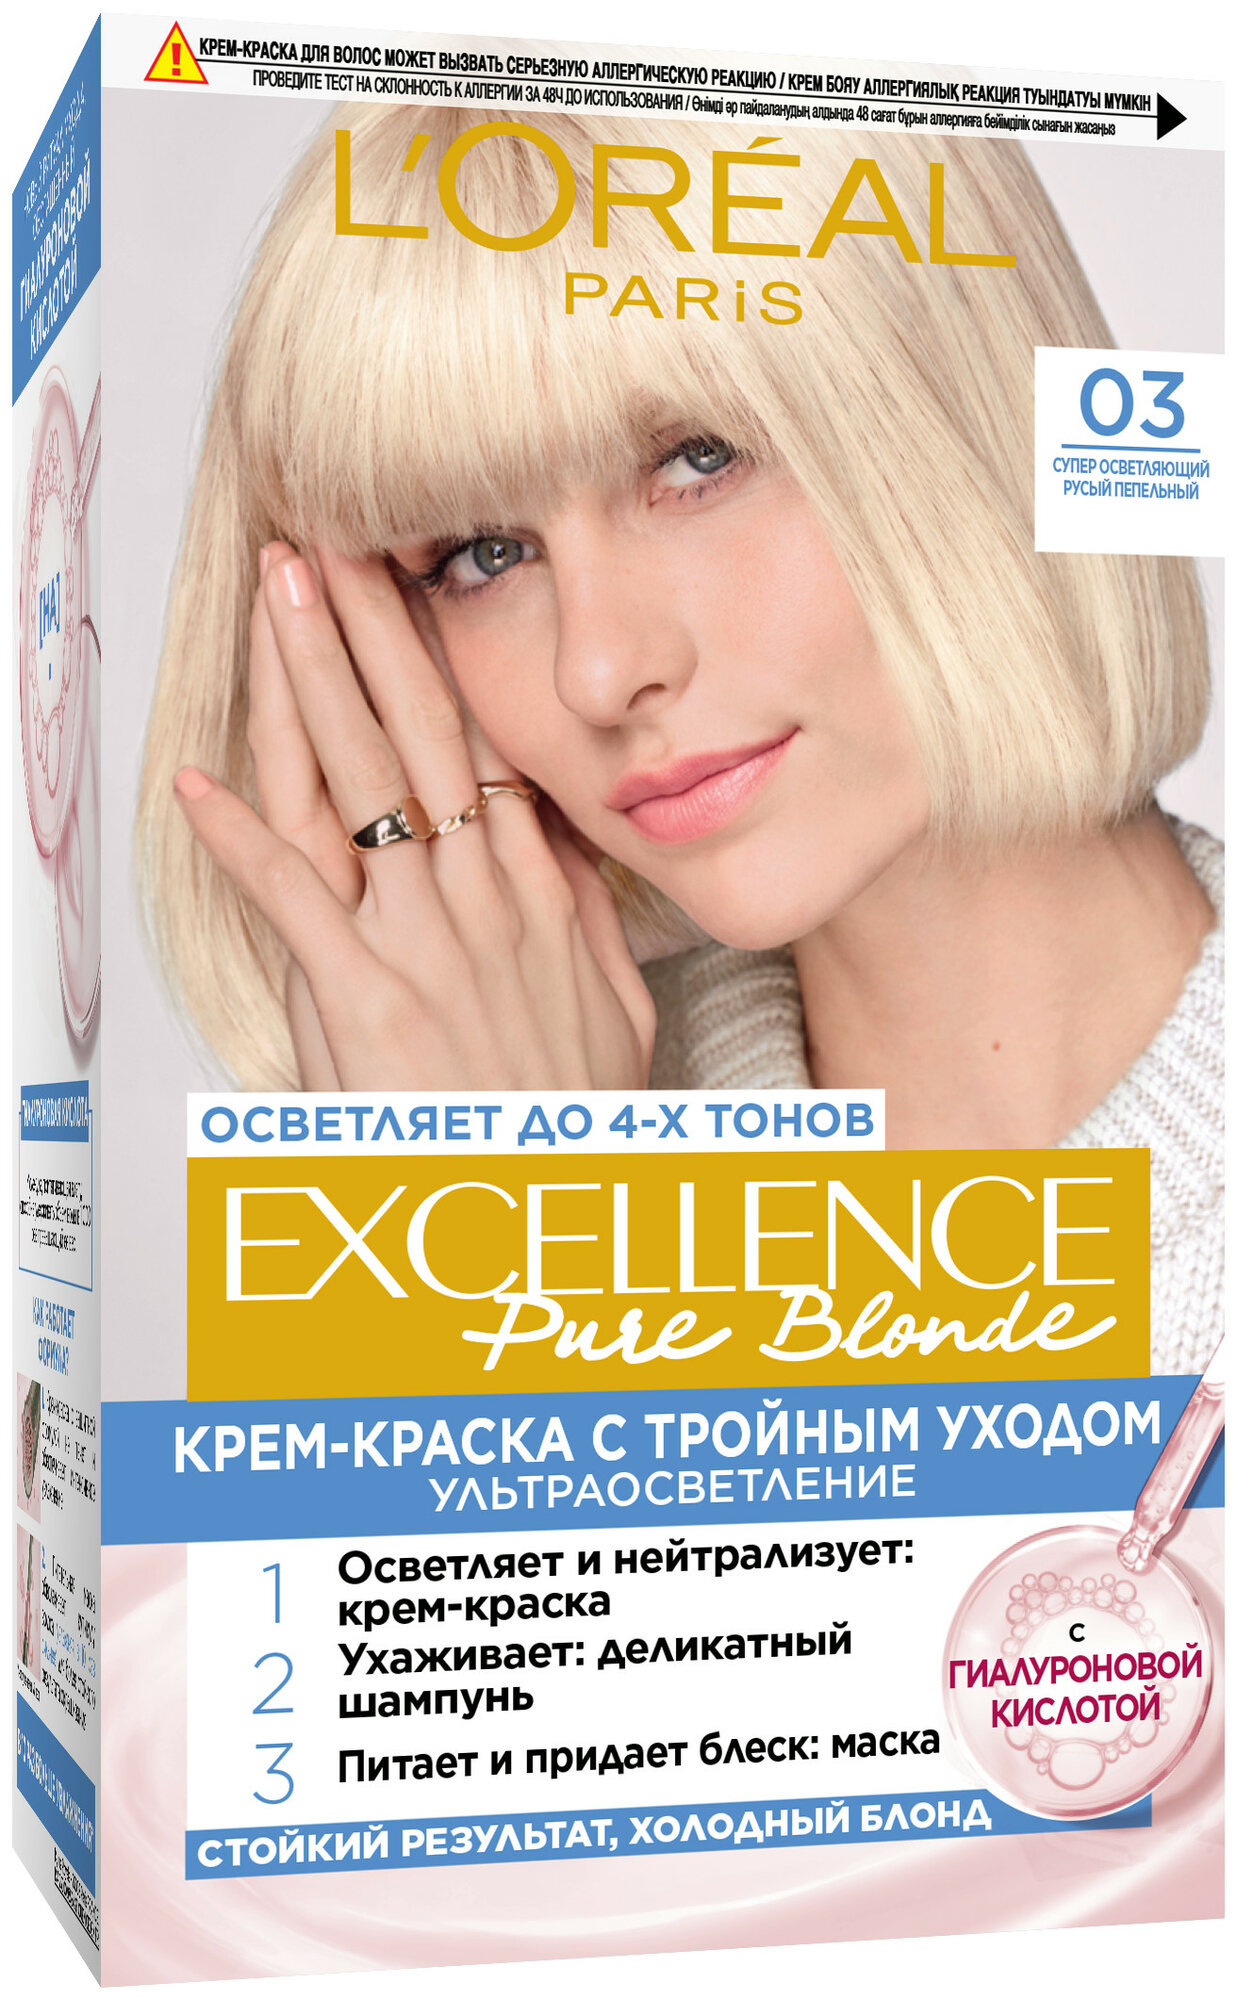 L'Oreal Paris Excellence стойкая крем-краска для волос, 03, Супер-осветляющий русый пепельный